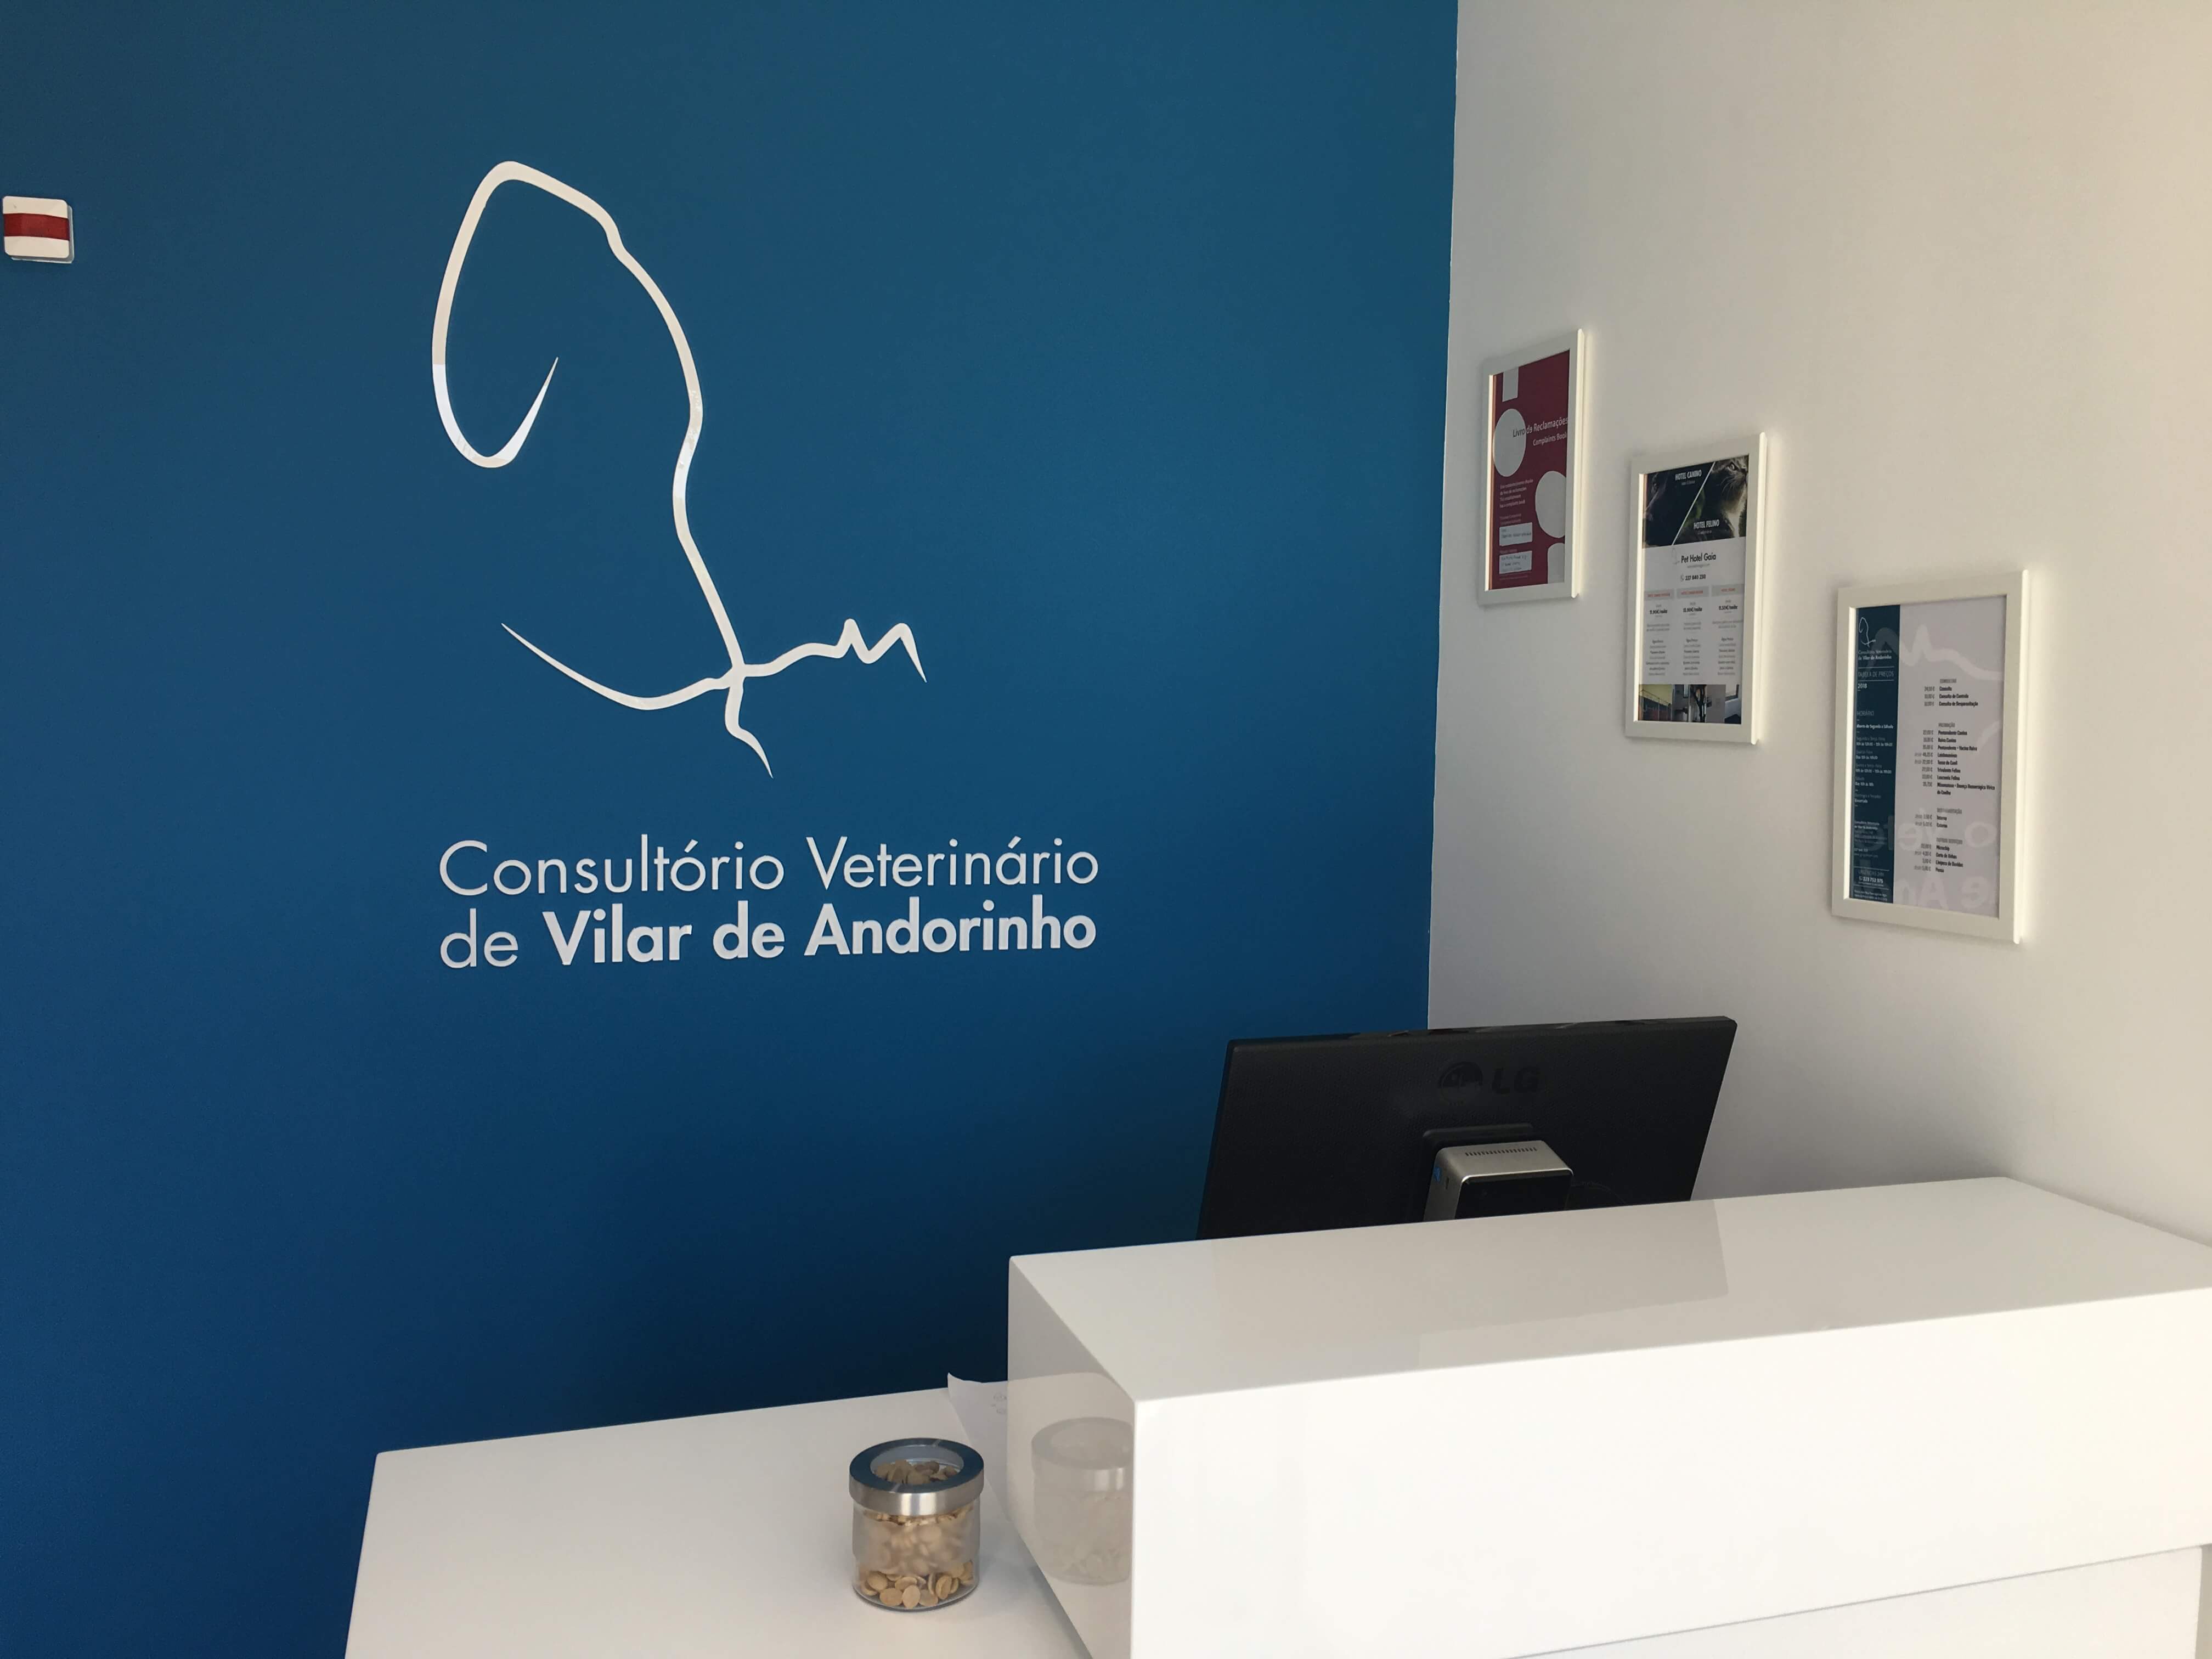 Vilar de Andorinho Veterinary Office